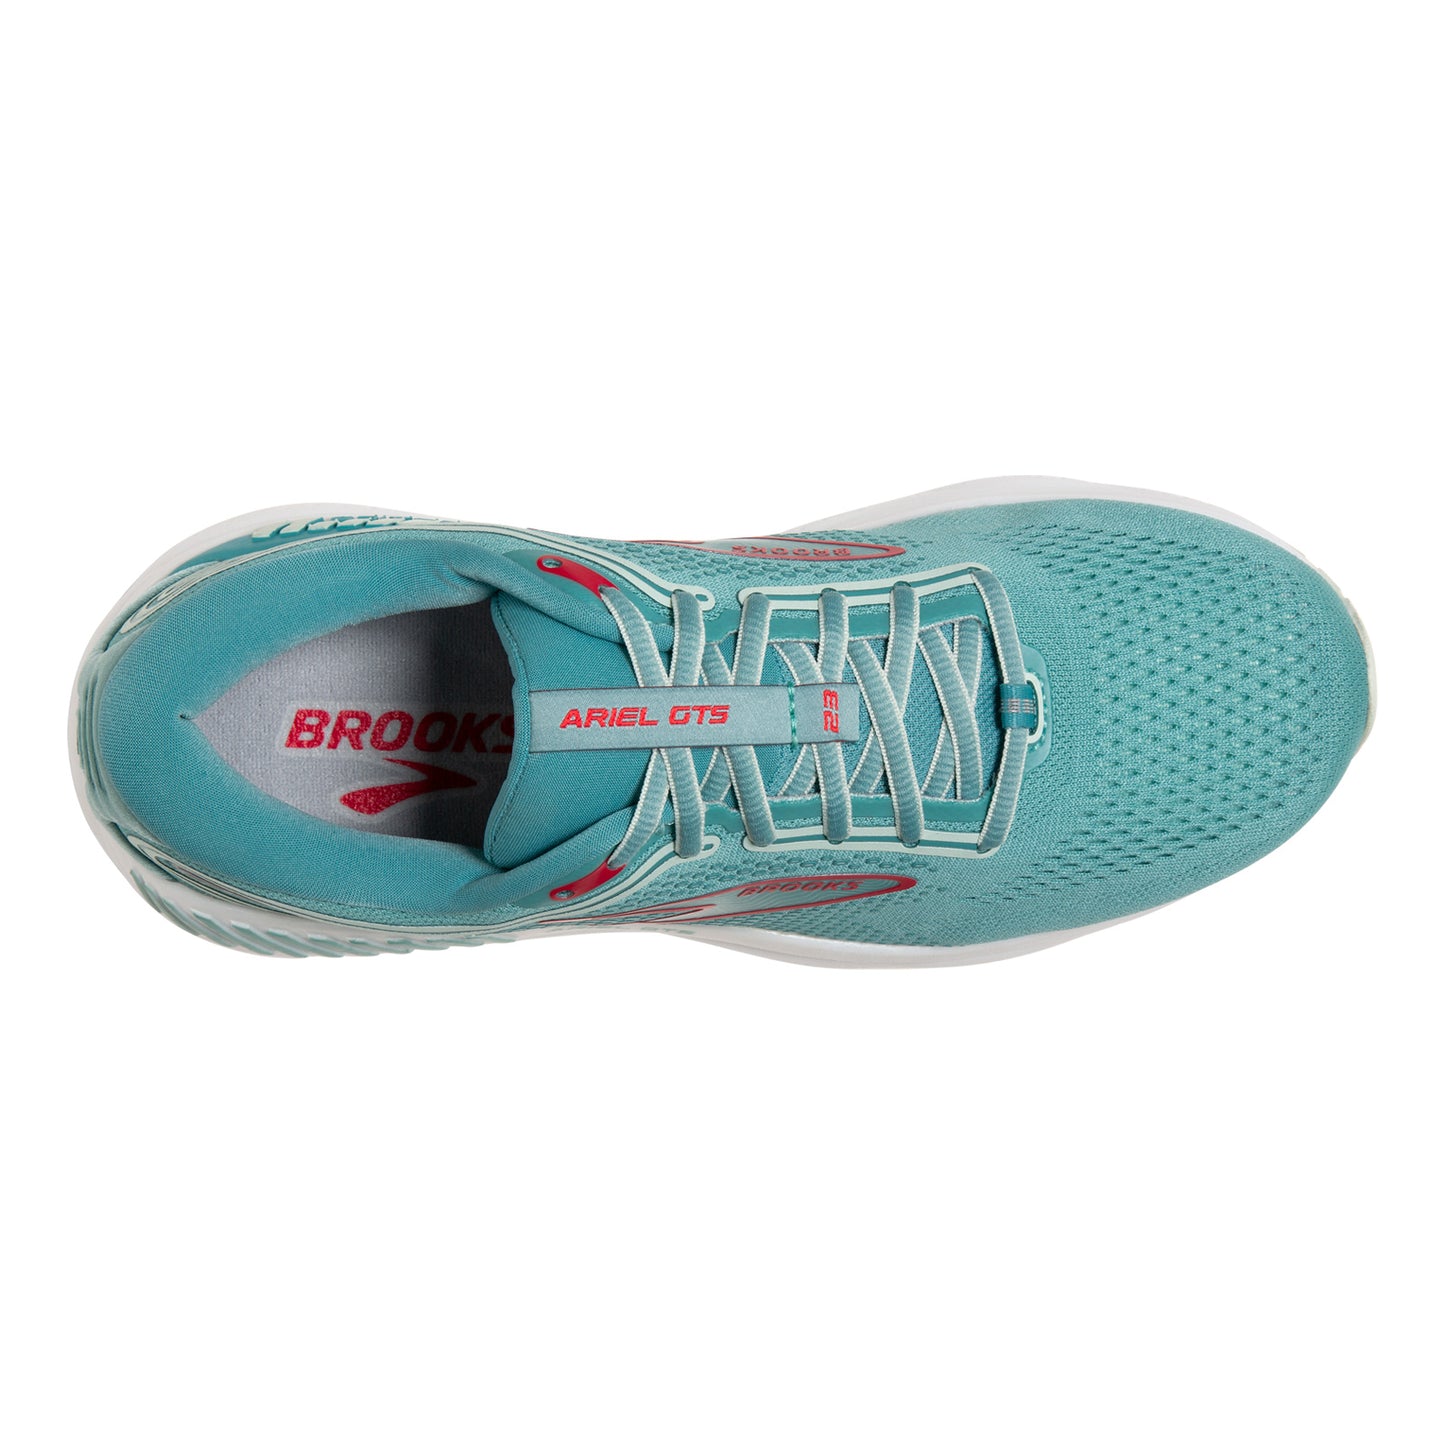 Peltz Shoes  Women's Brooks Ariel GTS 23 Running Shoe - Wide Width Nile Blue/Blue/Bittersweet 120390 1D 496